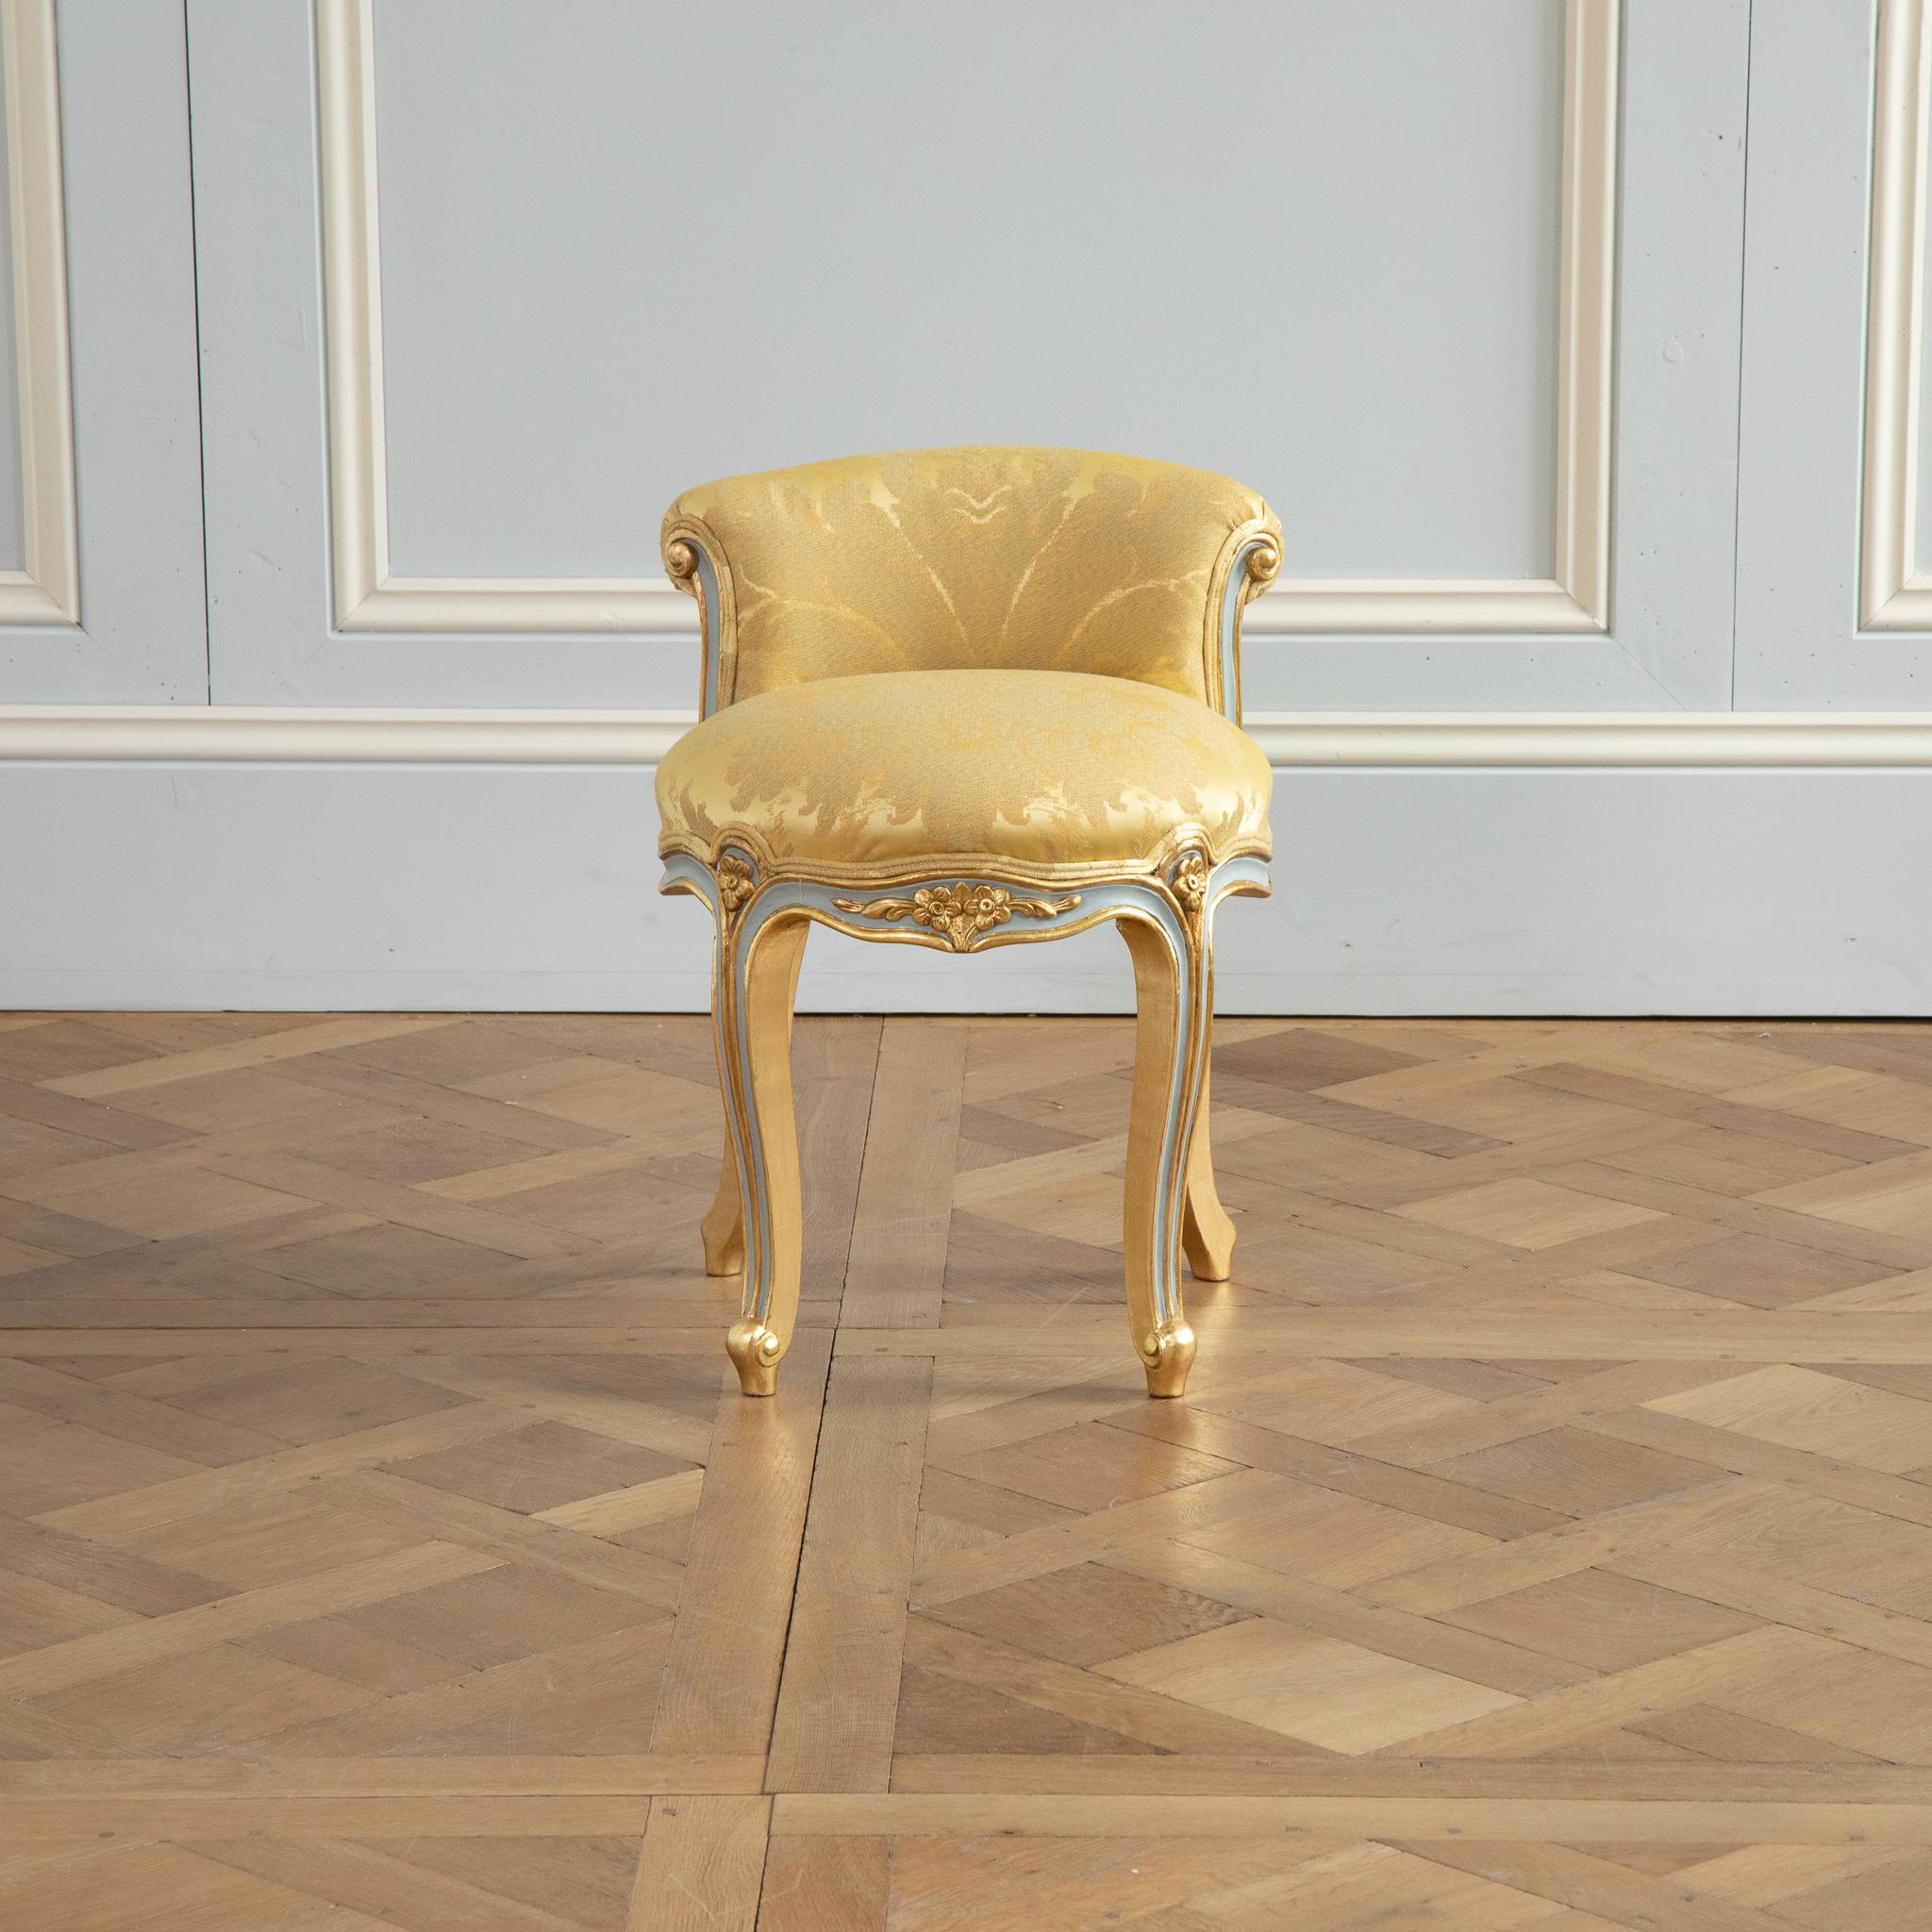 Tabouret de style crosse renverse Louis XV peint en gris français avec des reflets dorés